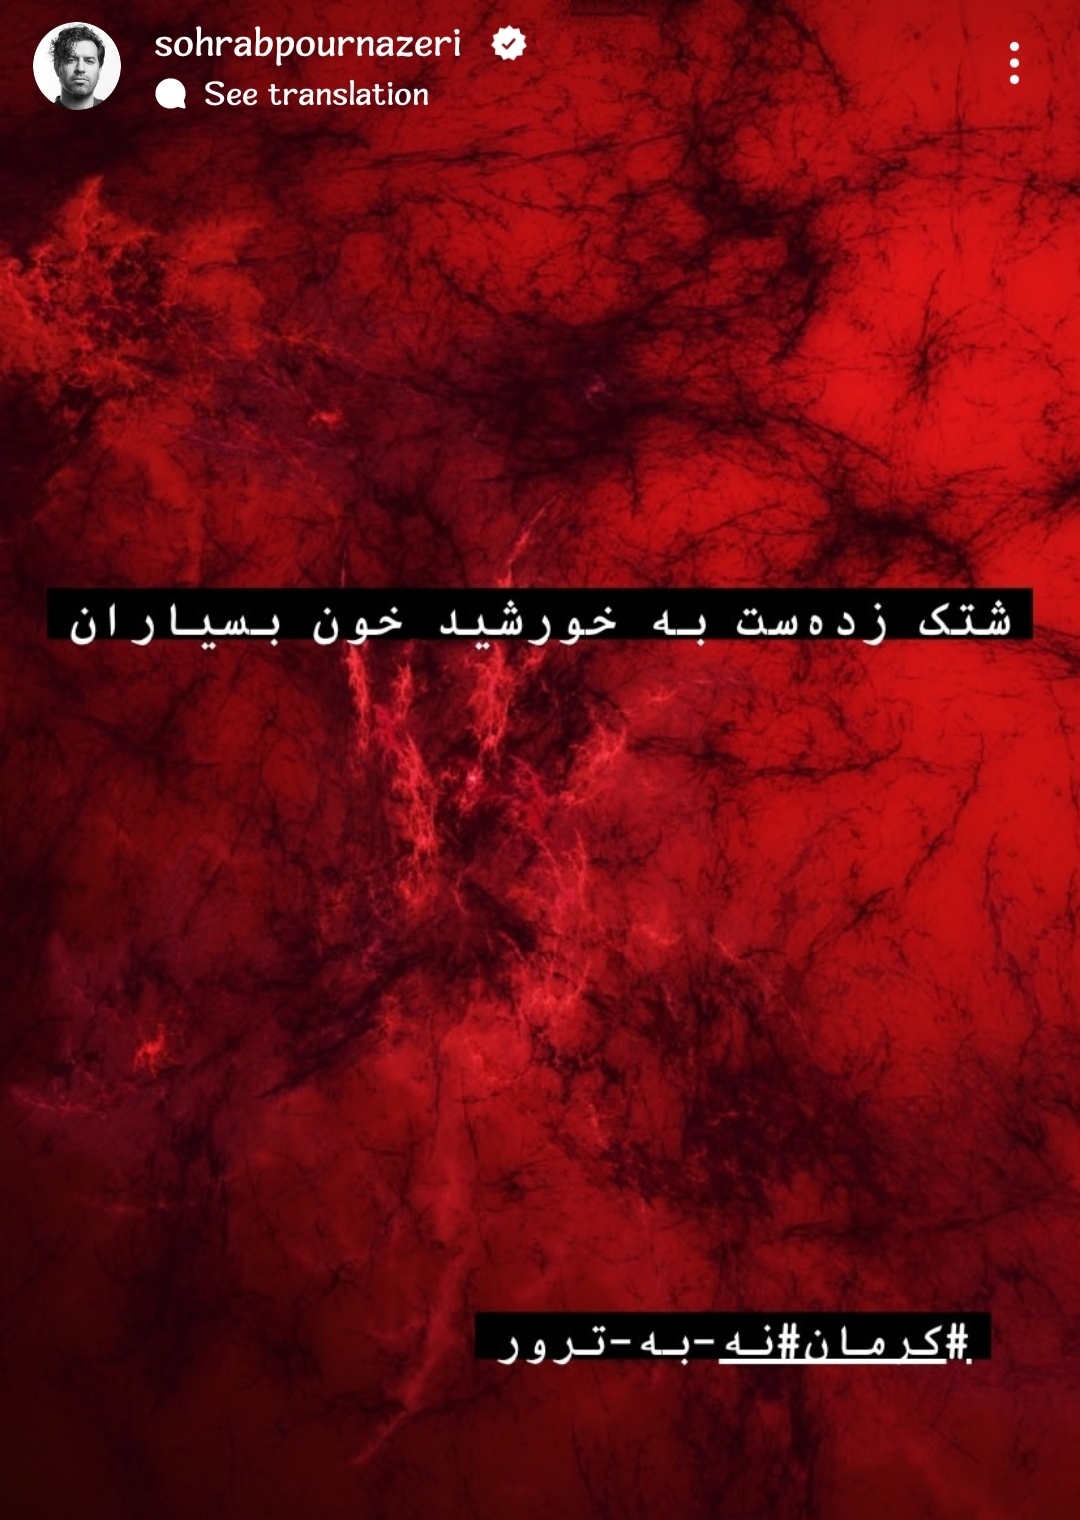 واکنش سهراب پورناظری به حادثه تروریستی در کرمان